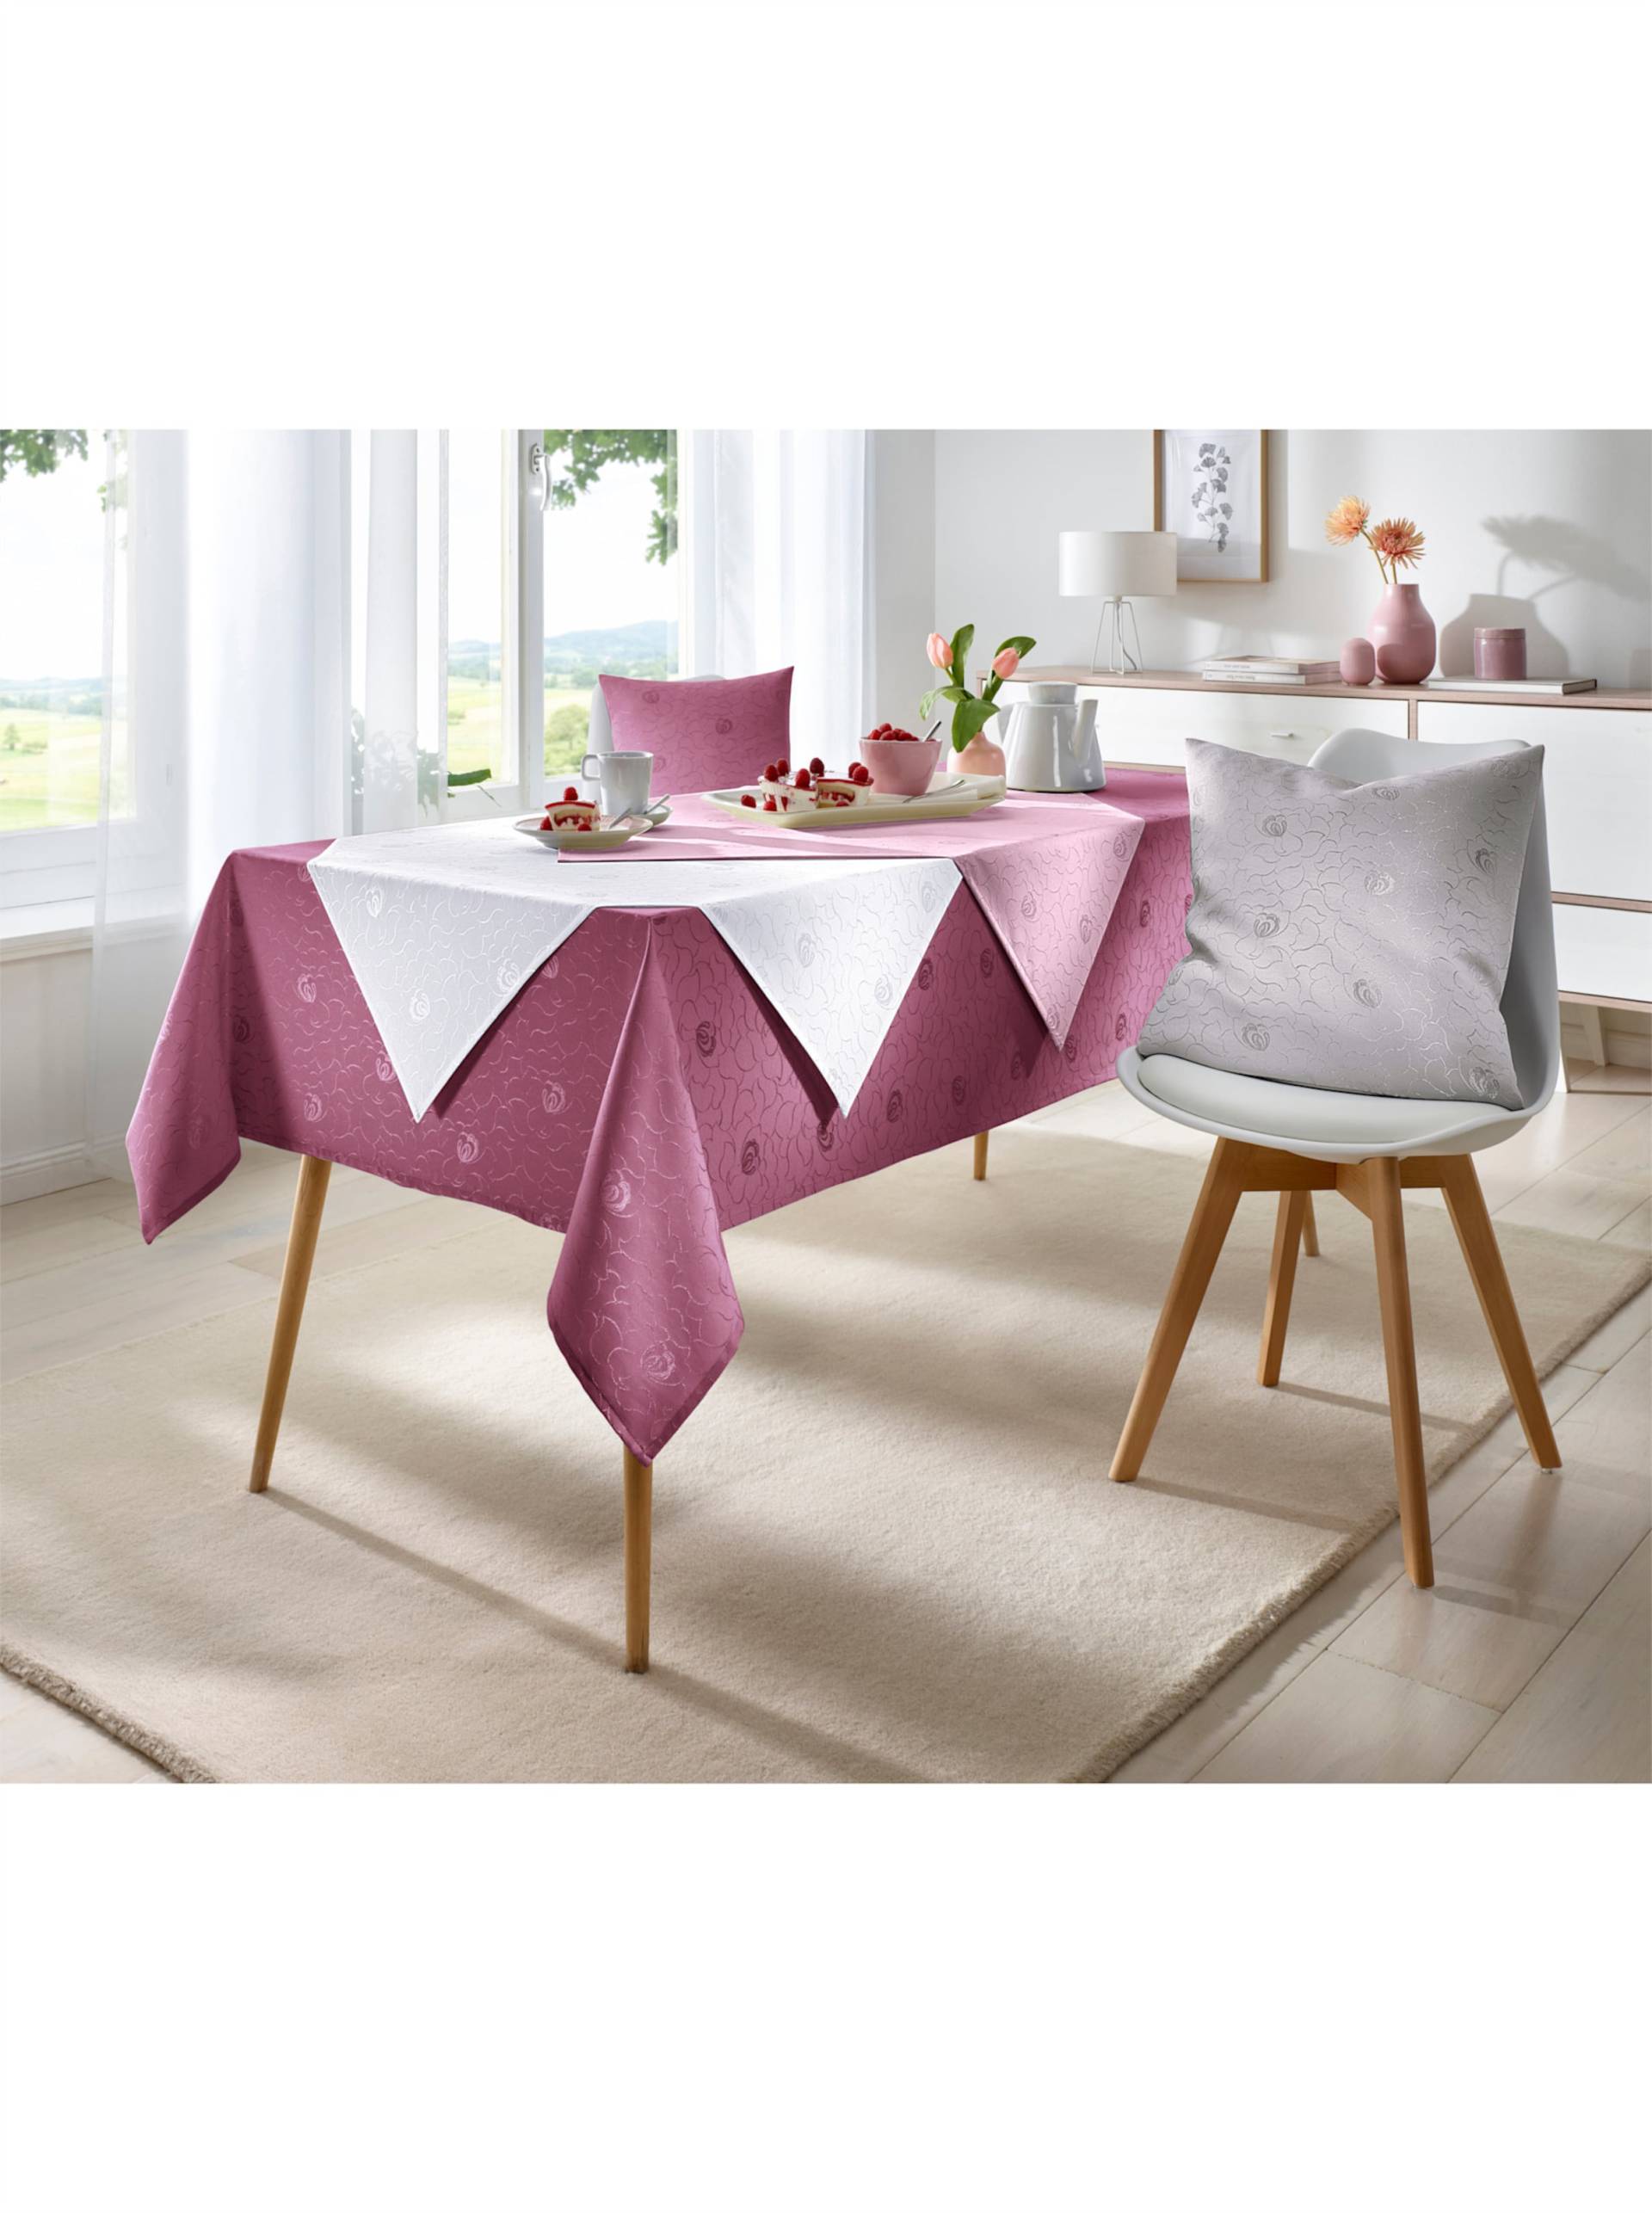 Tischdecke in rosé von heine von heine